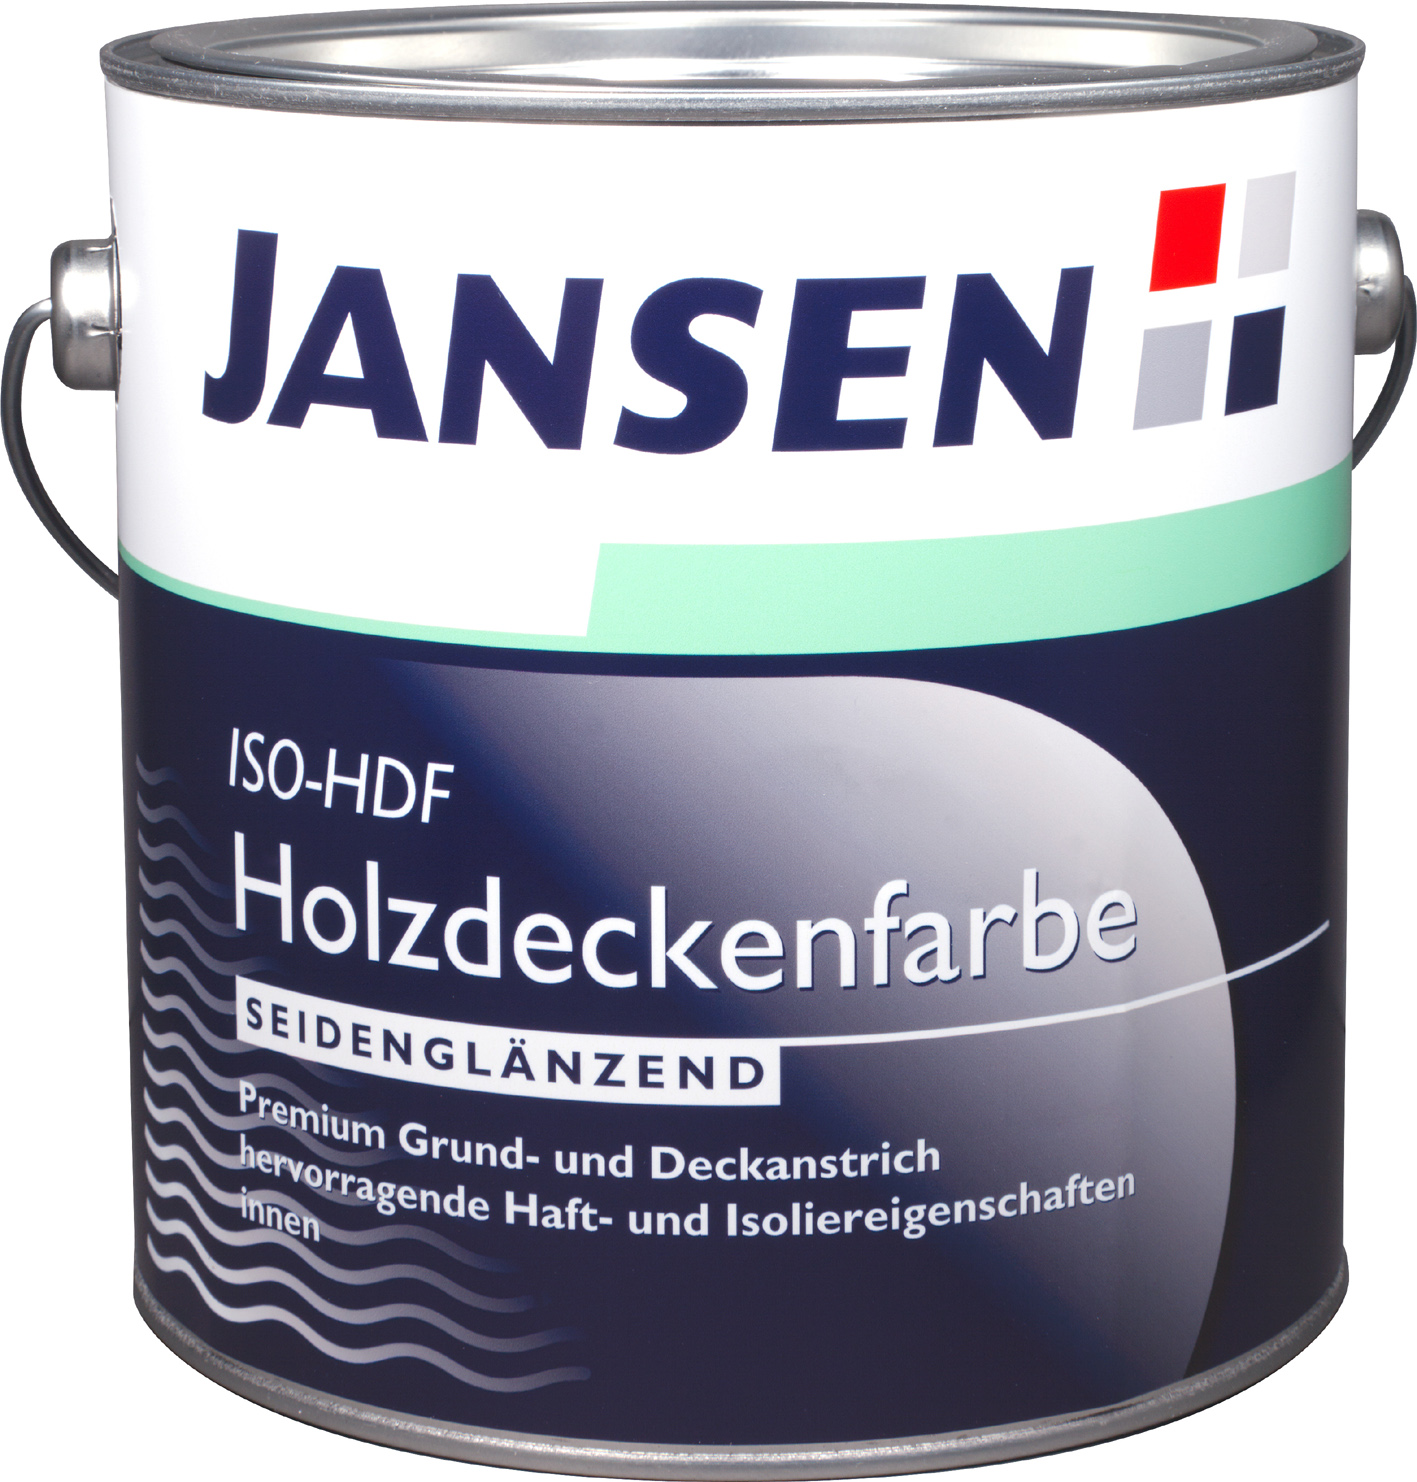 Jansen ISO-HDF Holzdeckenfarbe - 750ml innen weiß sglz